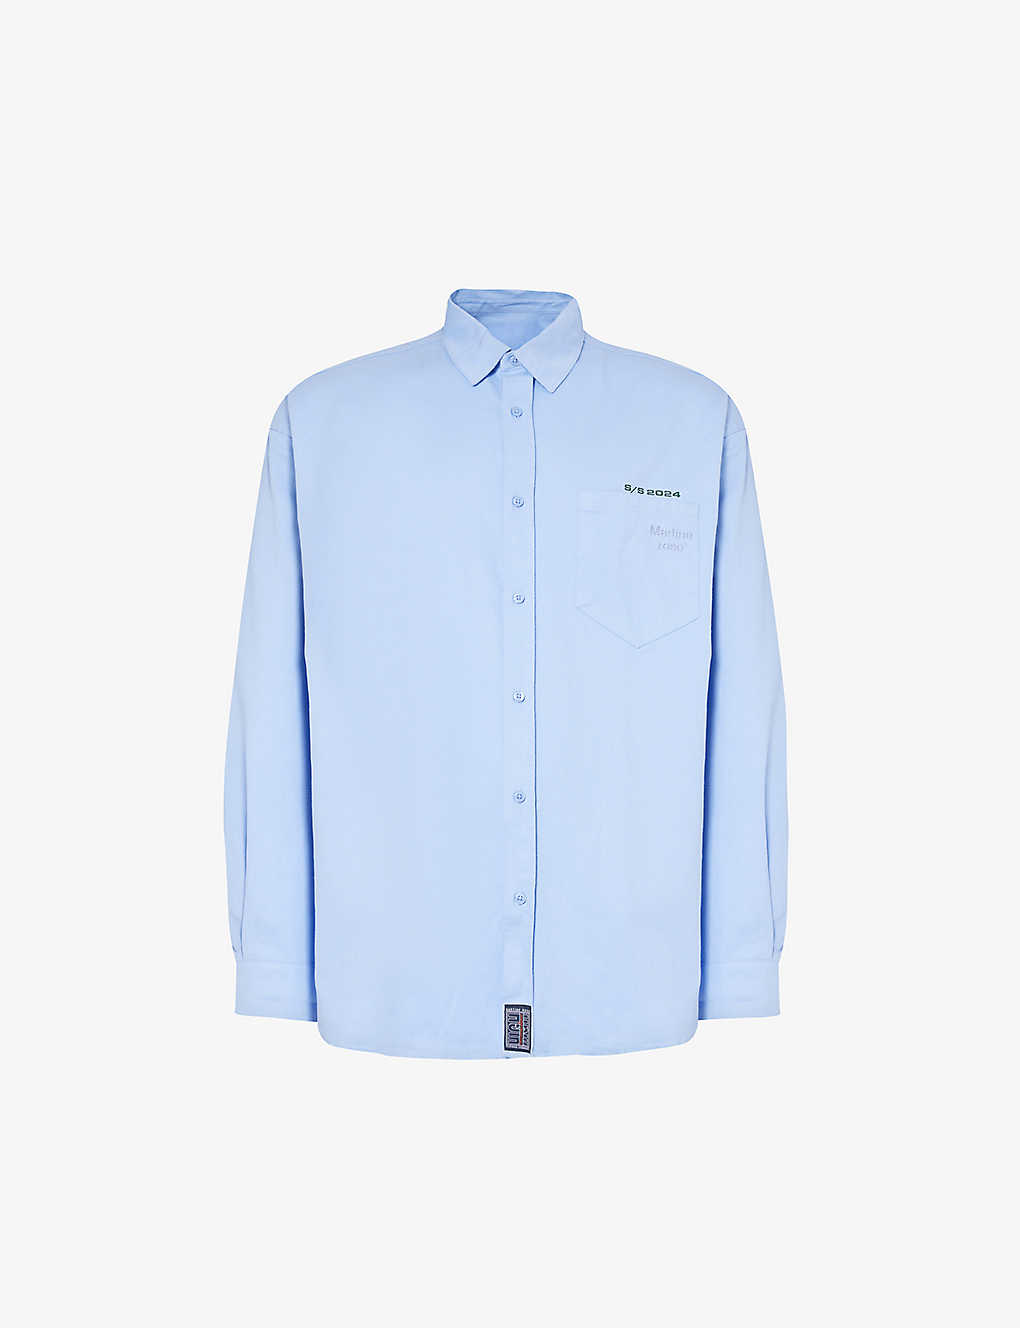 Martine Rose Mens Pale Blue Brand-embellished Regular-fit Cotton Shirt